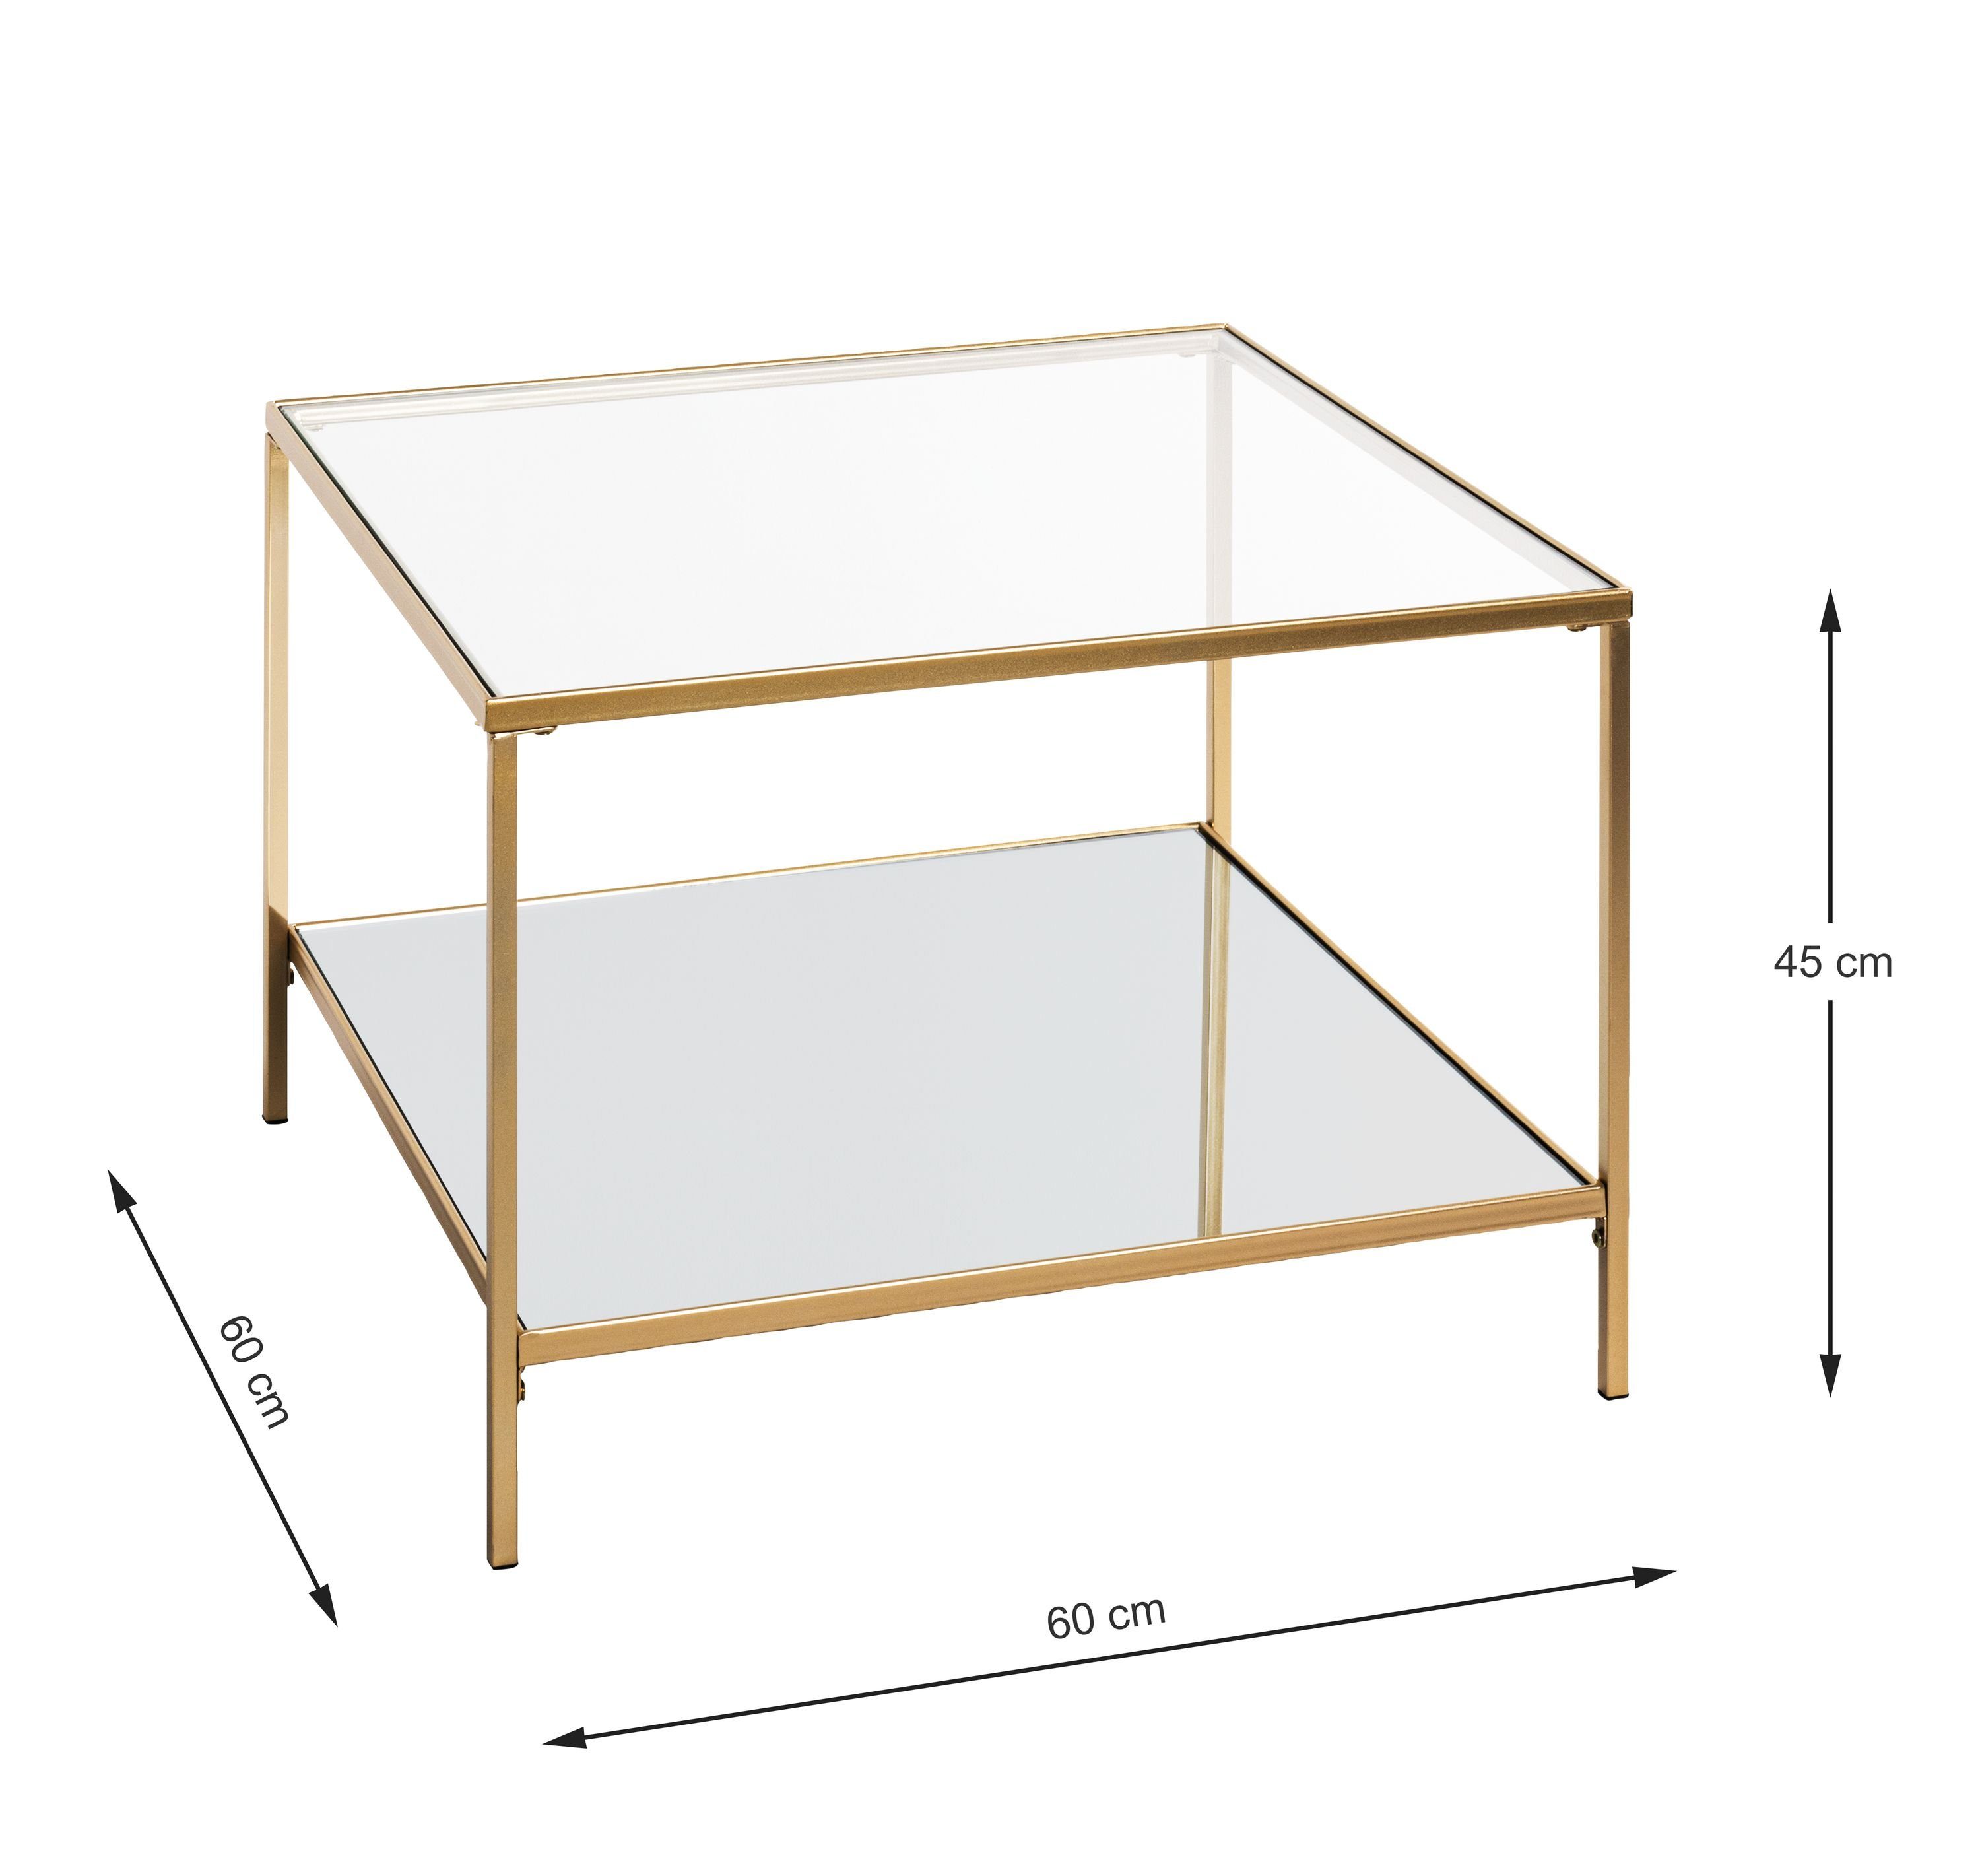 HAKU Beistelltisch Beistelltisch, Möbel Beistelltisch cm gold cm) (BHT 60x45x60 HAKU BHT 60x45x60